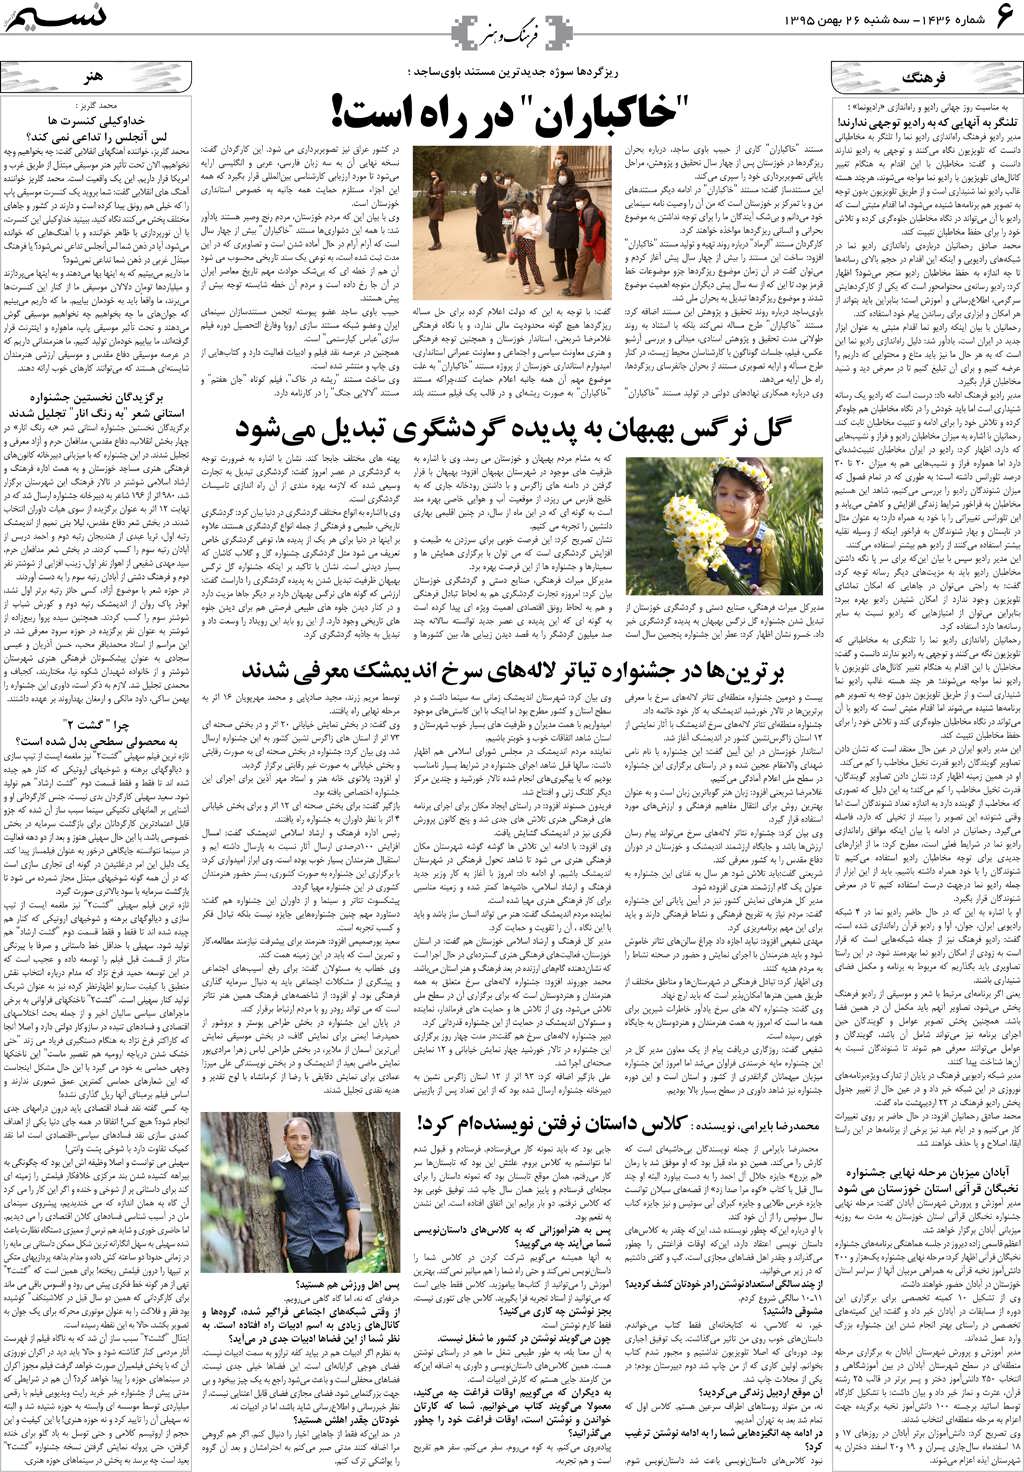 صفحه فرهنگ و هنر روزنامه نسیم شماره 1436